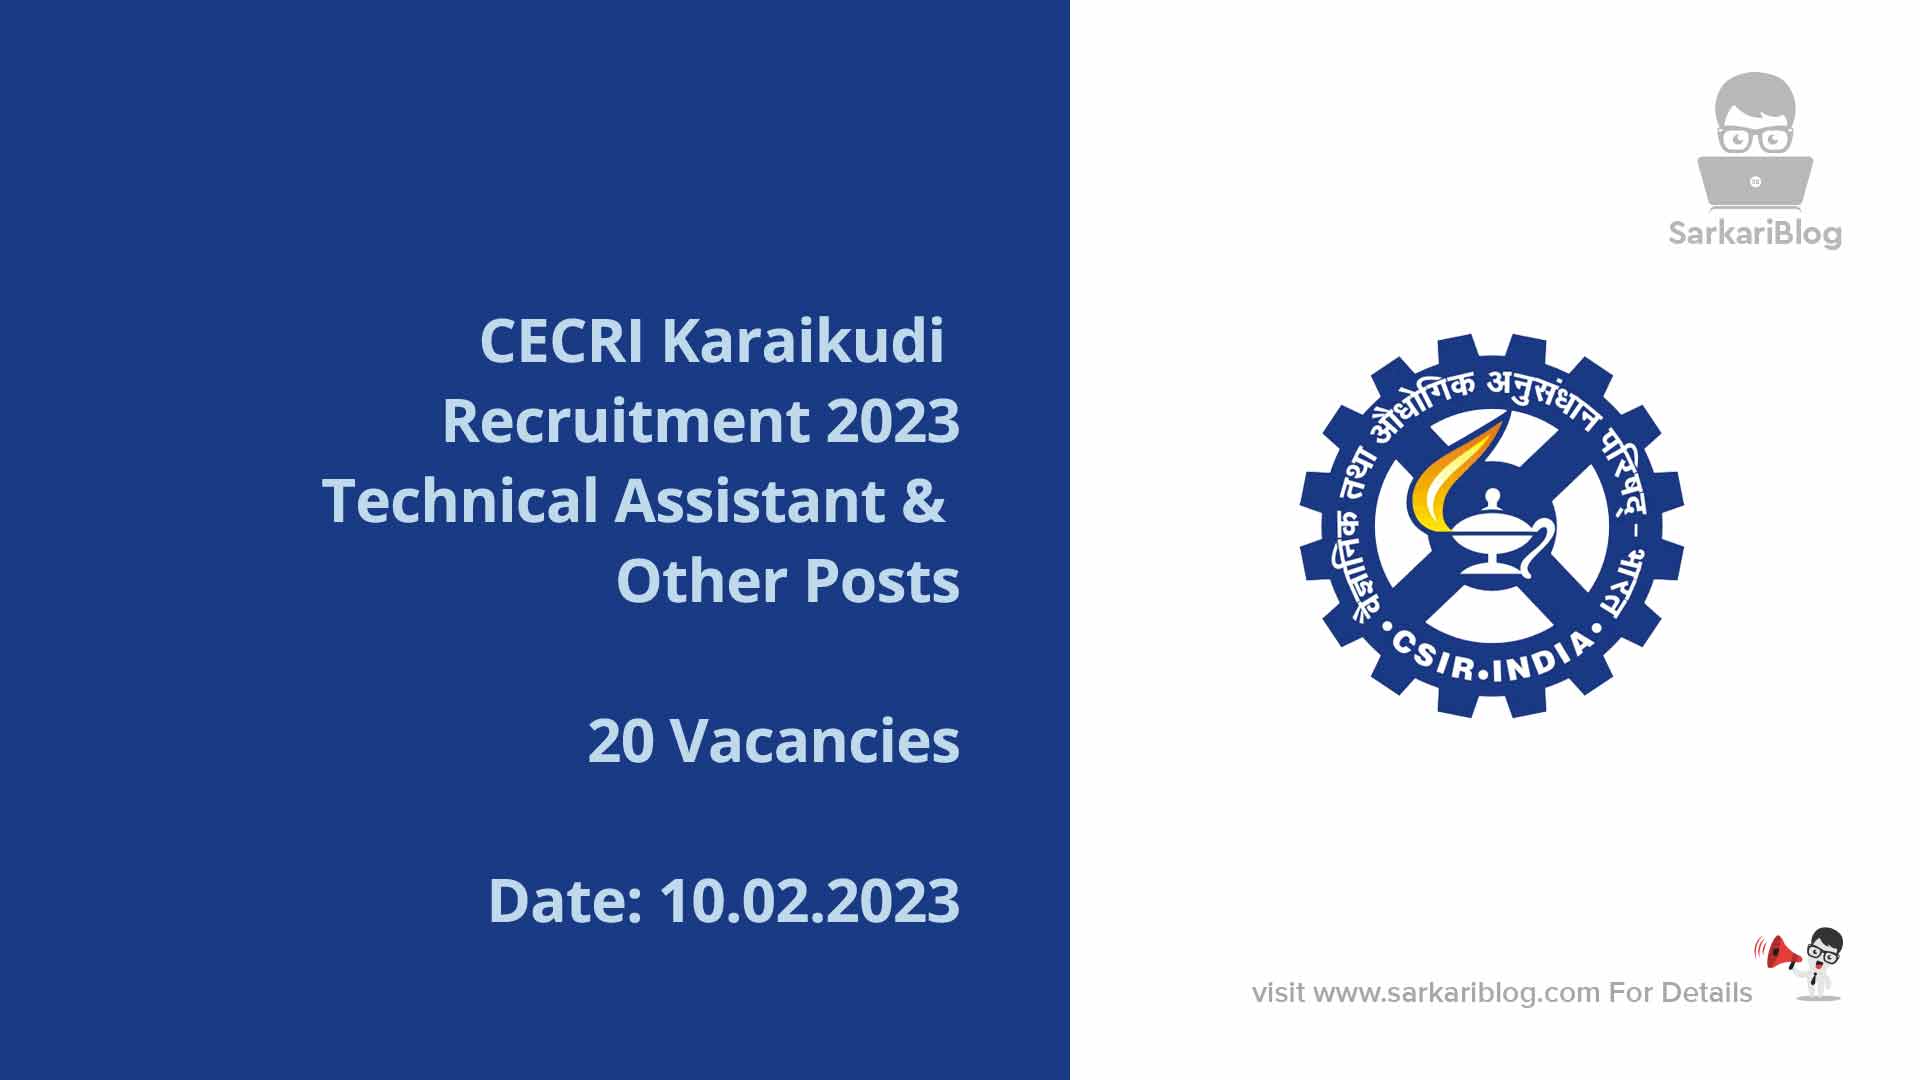 CECRI Karaikudi Recruitment 2023